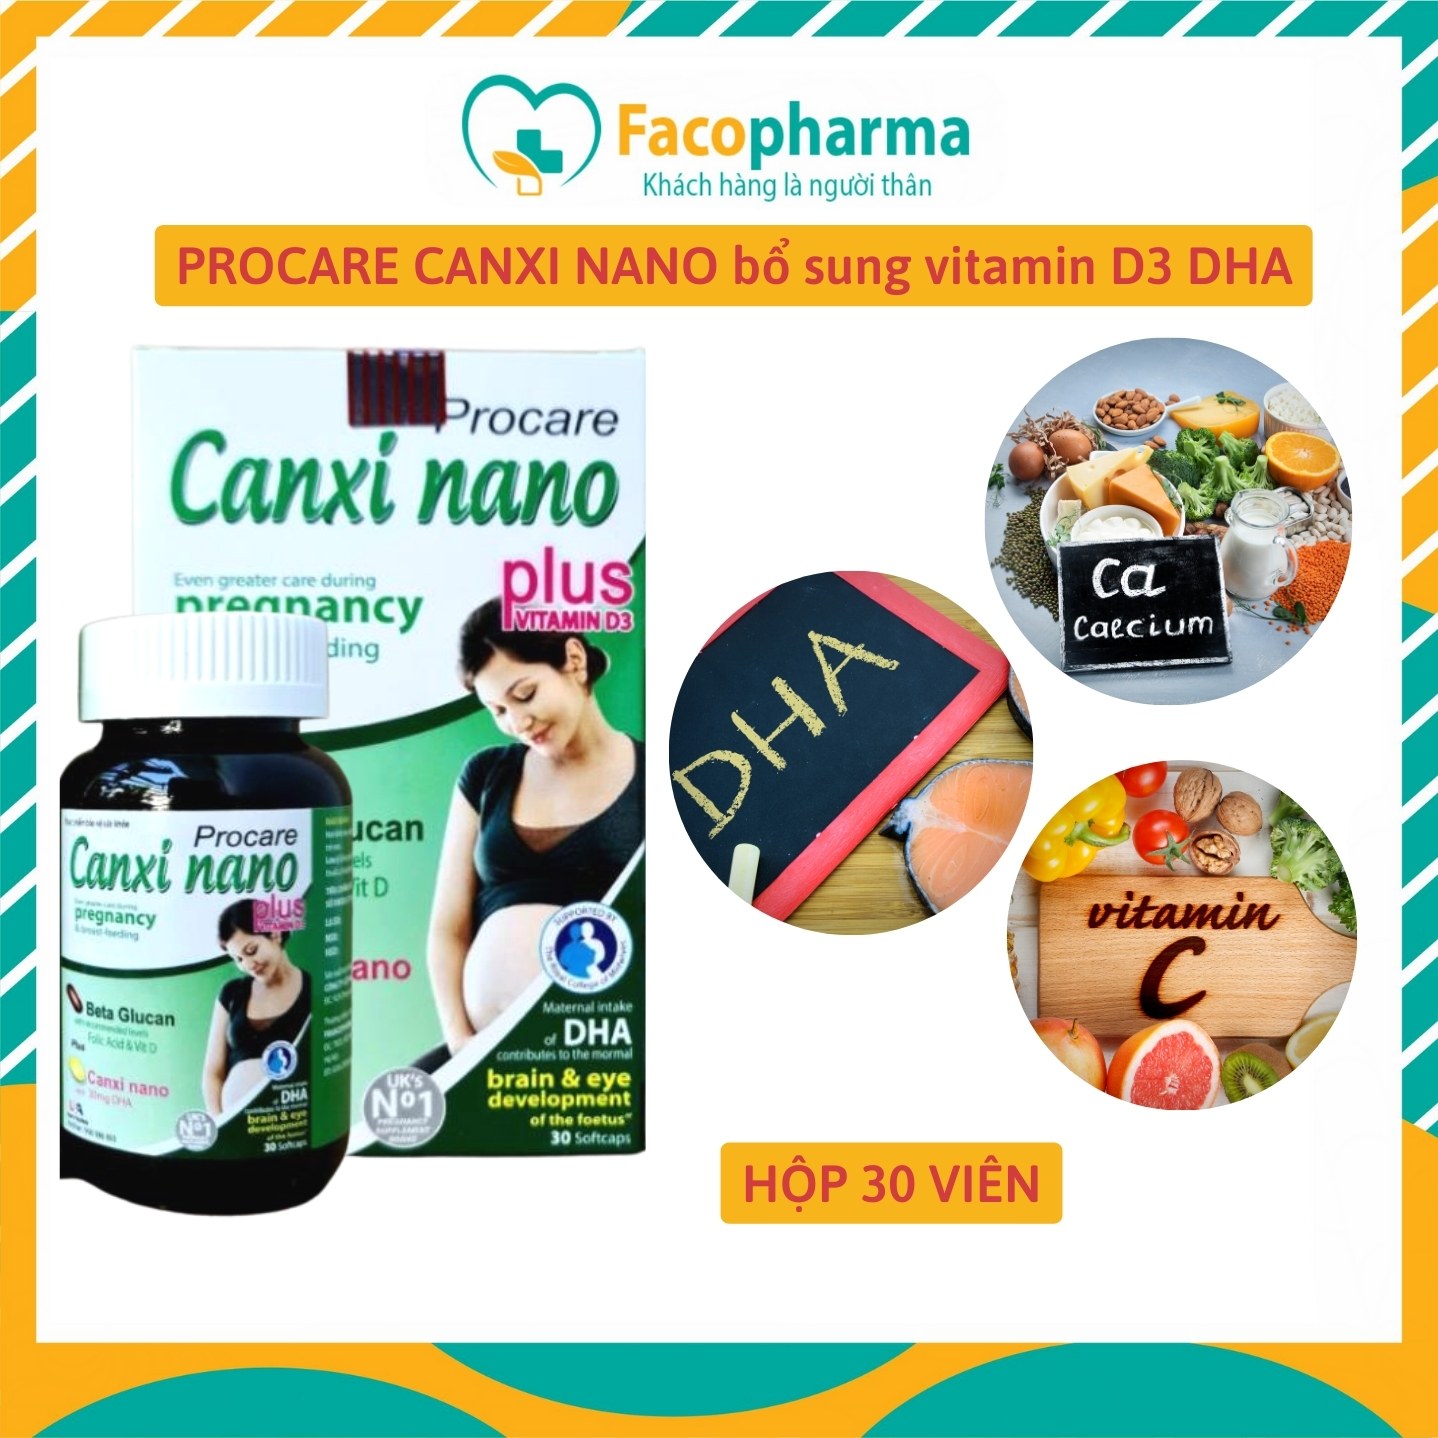 PROCARE CANXI NANO bổ sung vitamin D3 beta glucan DHA giúp xương chắc khoẻ